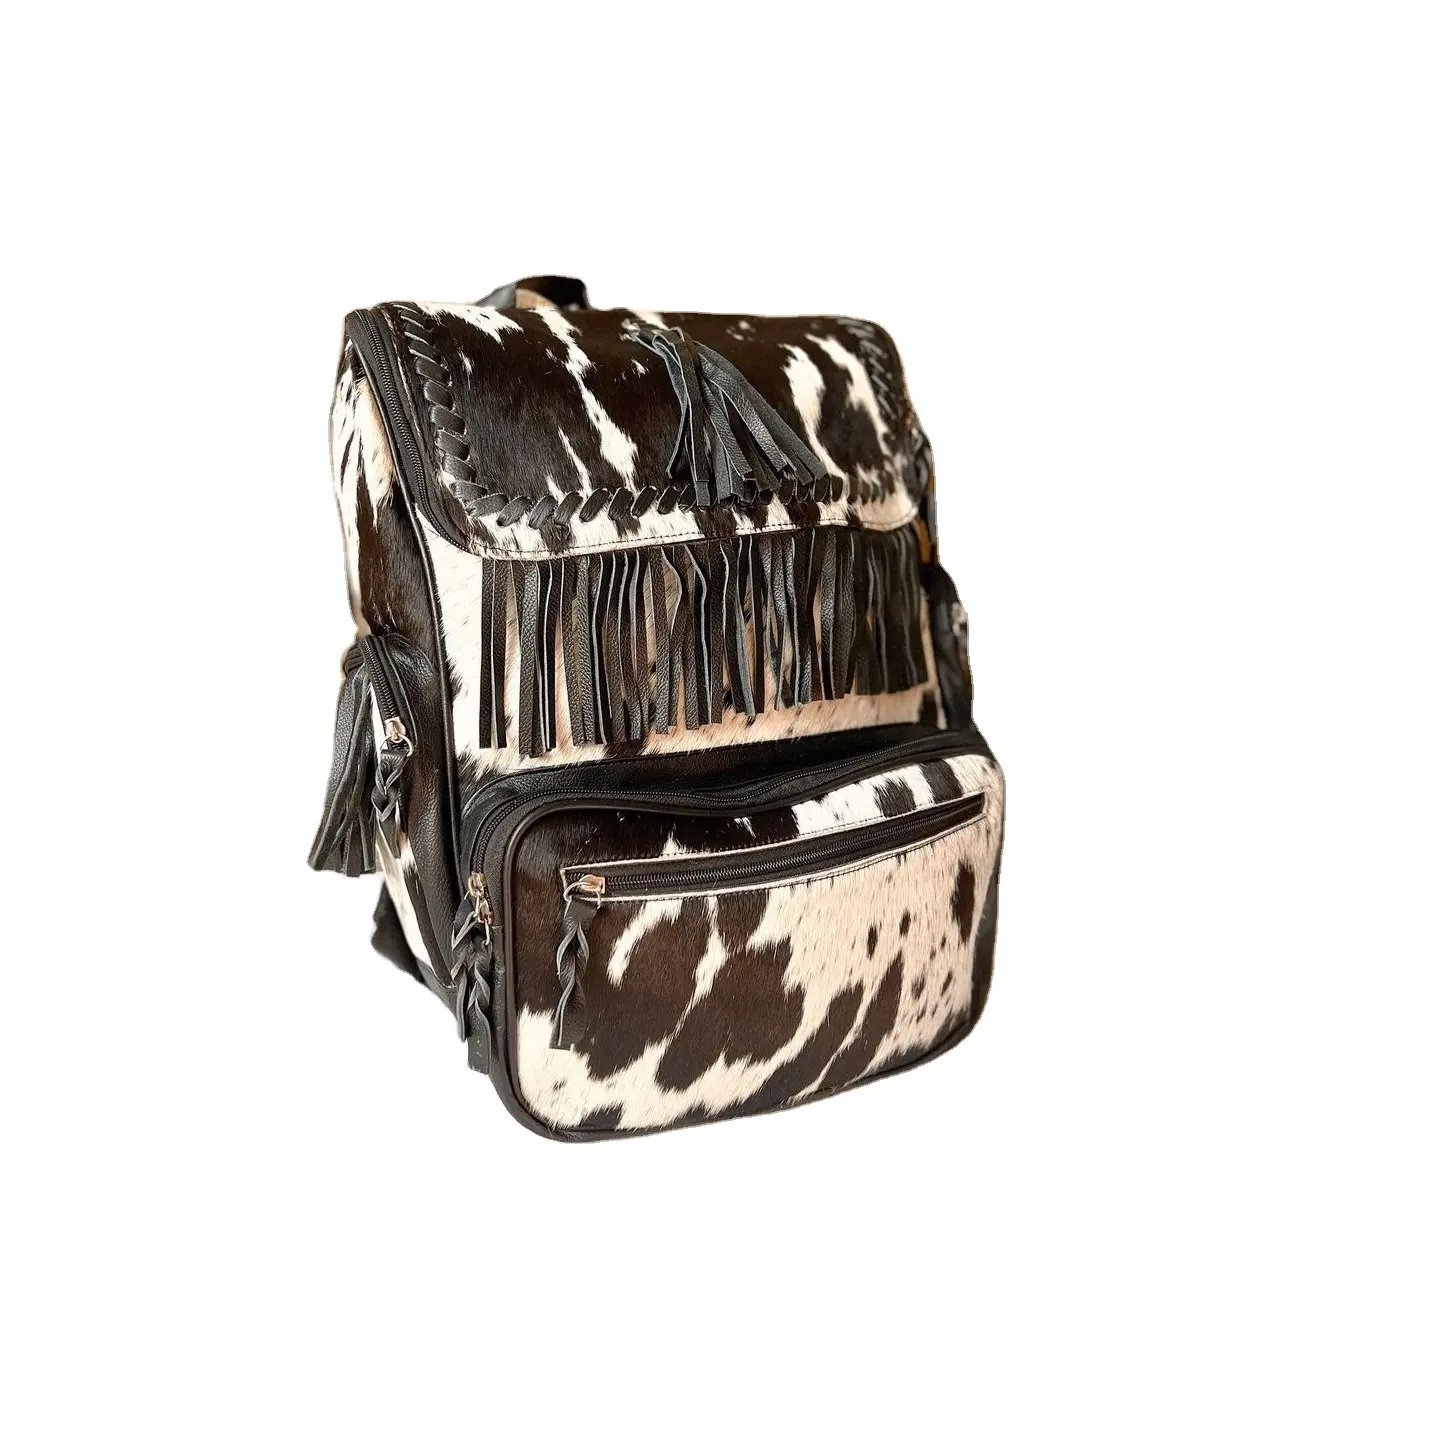 Inek kürk oyma toptan üretici inek derisi saç kürk deri batı tarzı çanta paketi özel yapılmış çanta